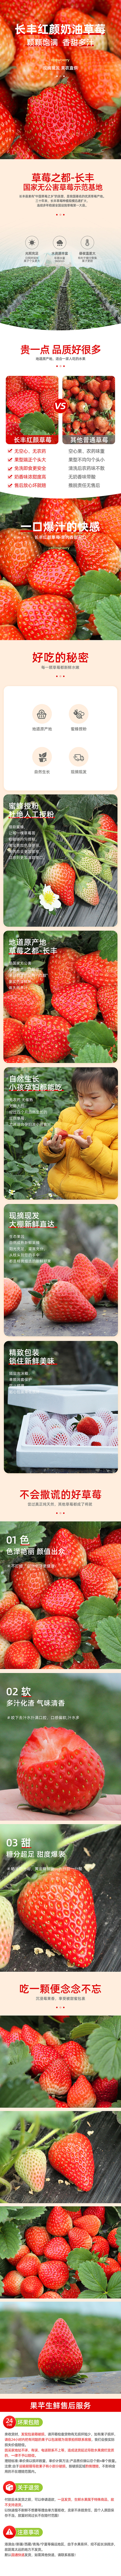 奶油草莓 红颜草莓详情页